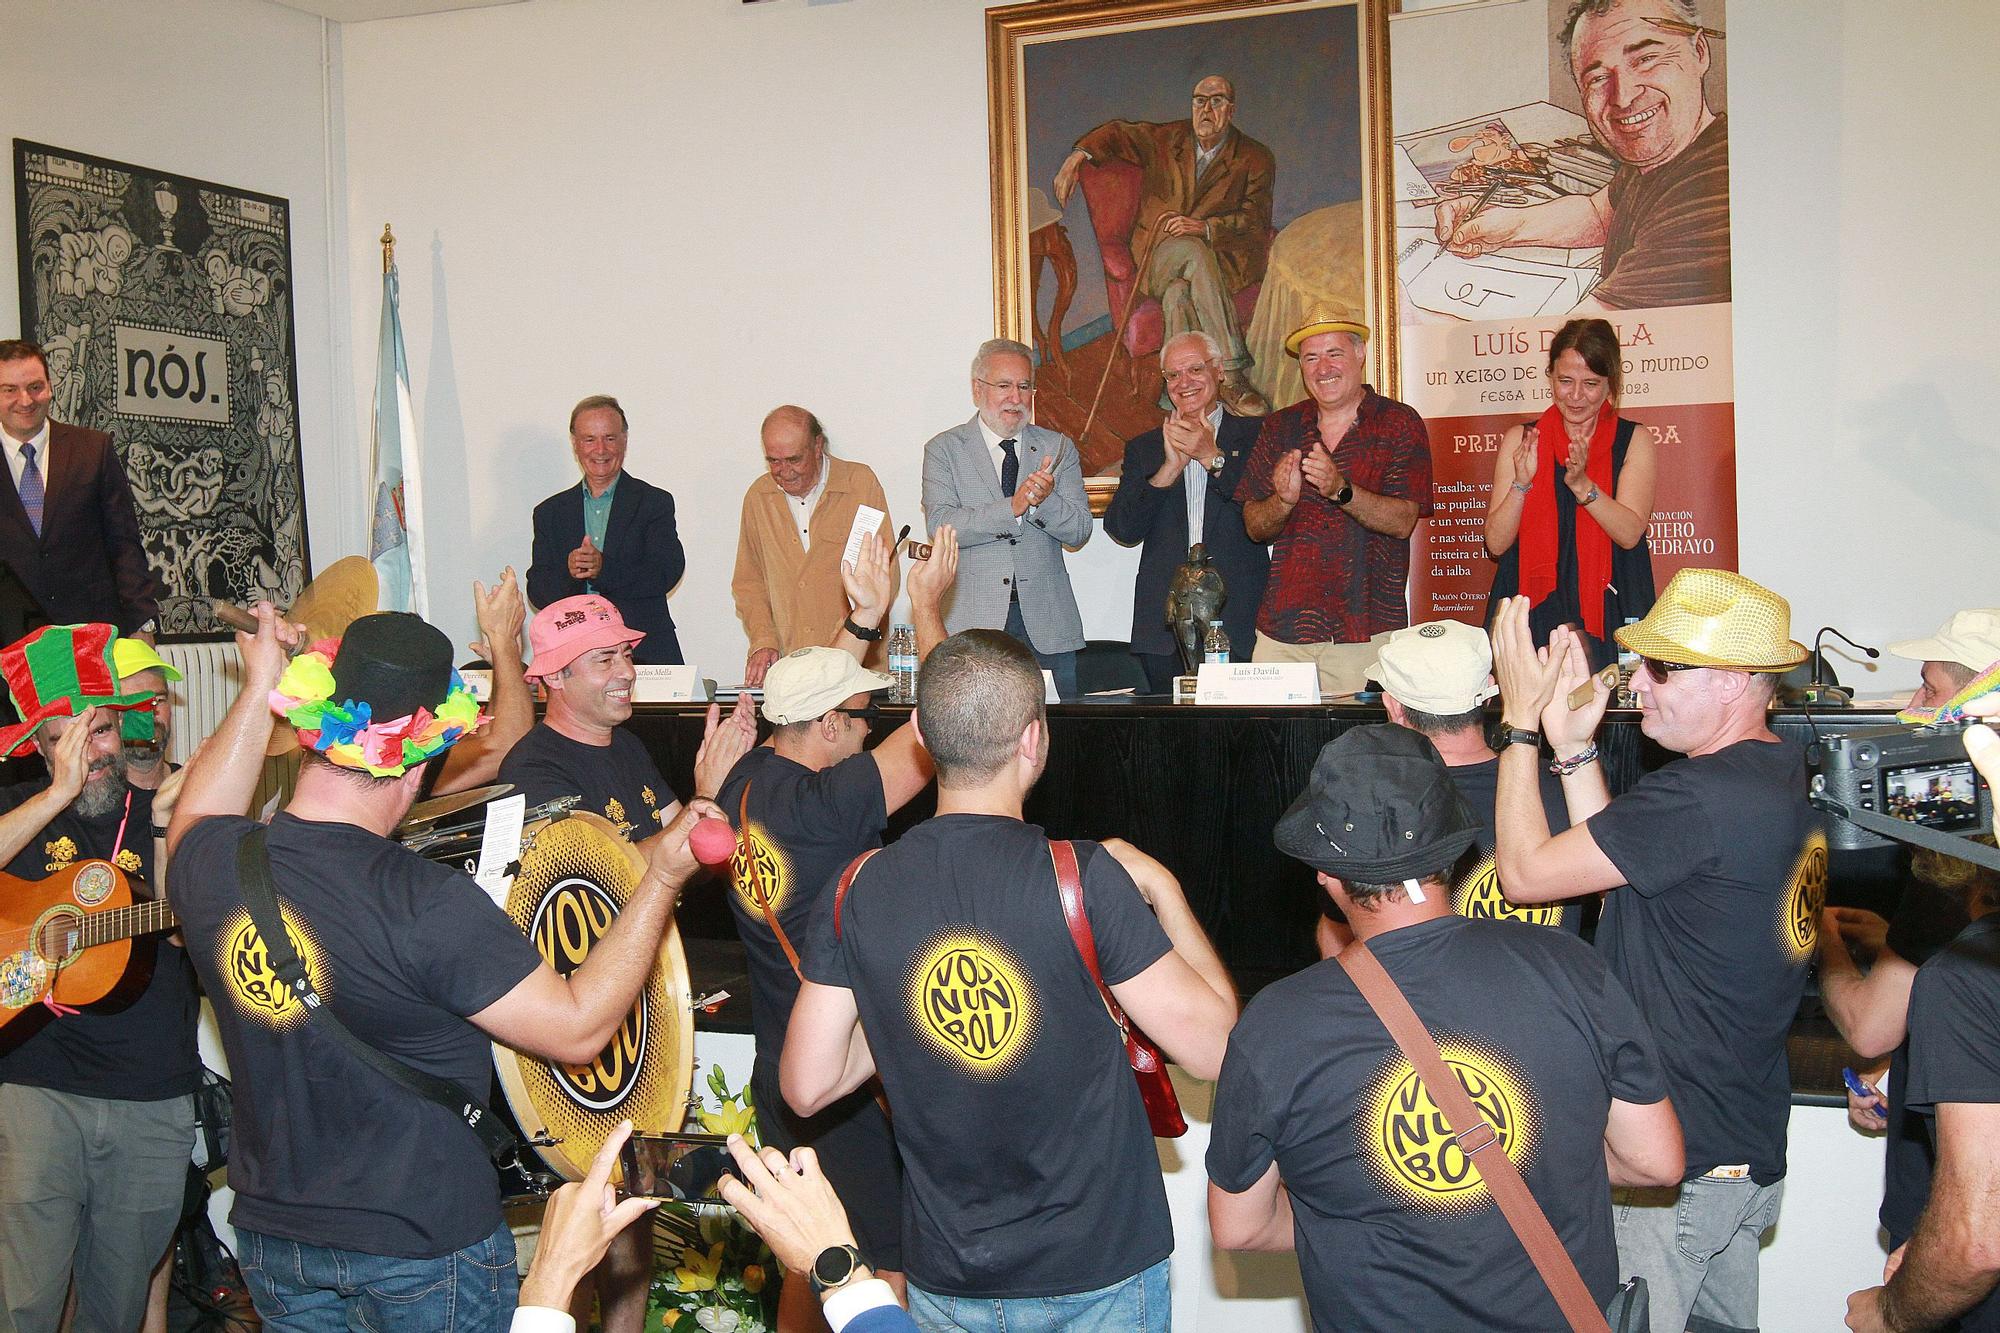 Luis Davila, humorista de FARO, recibe el Premio Trasalba 2023